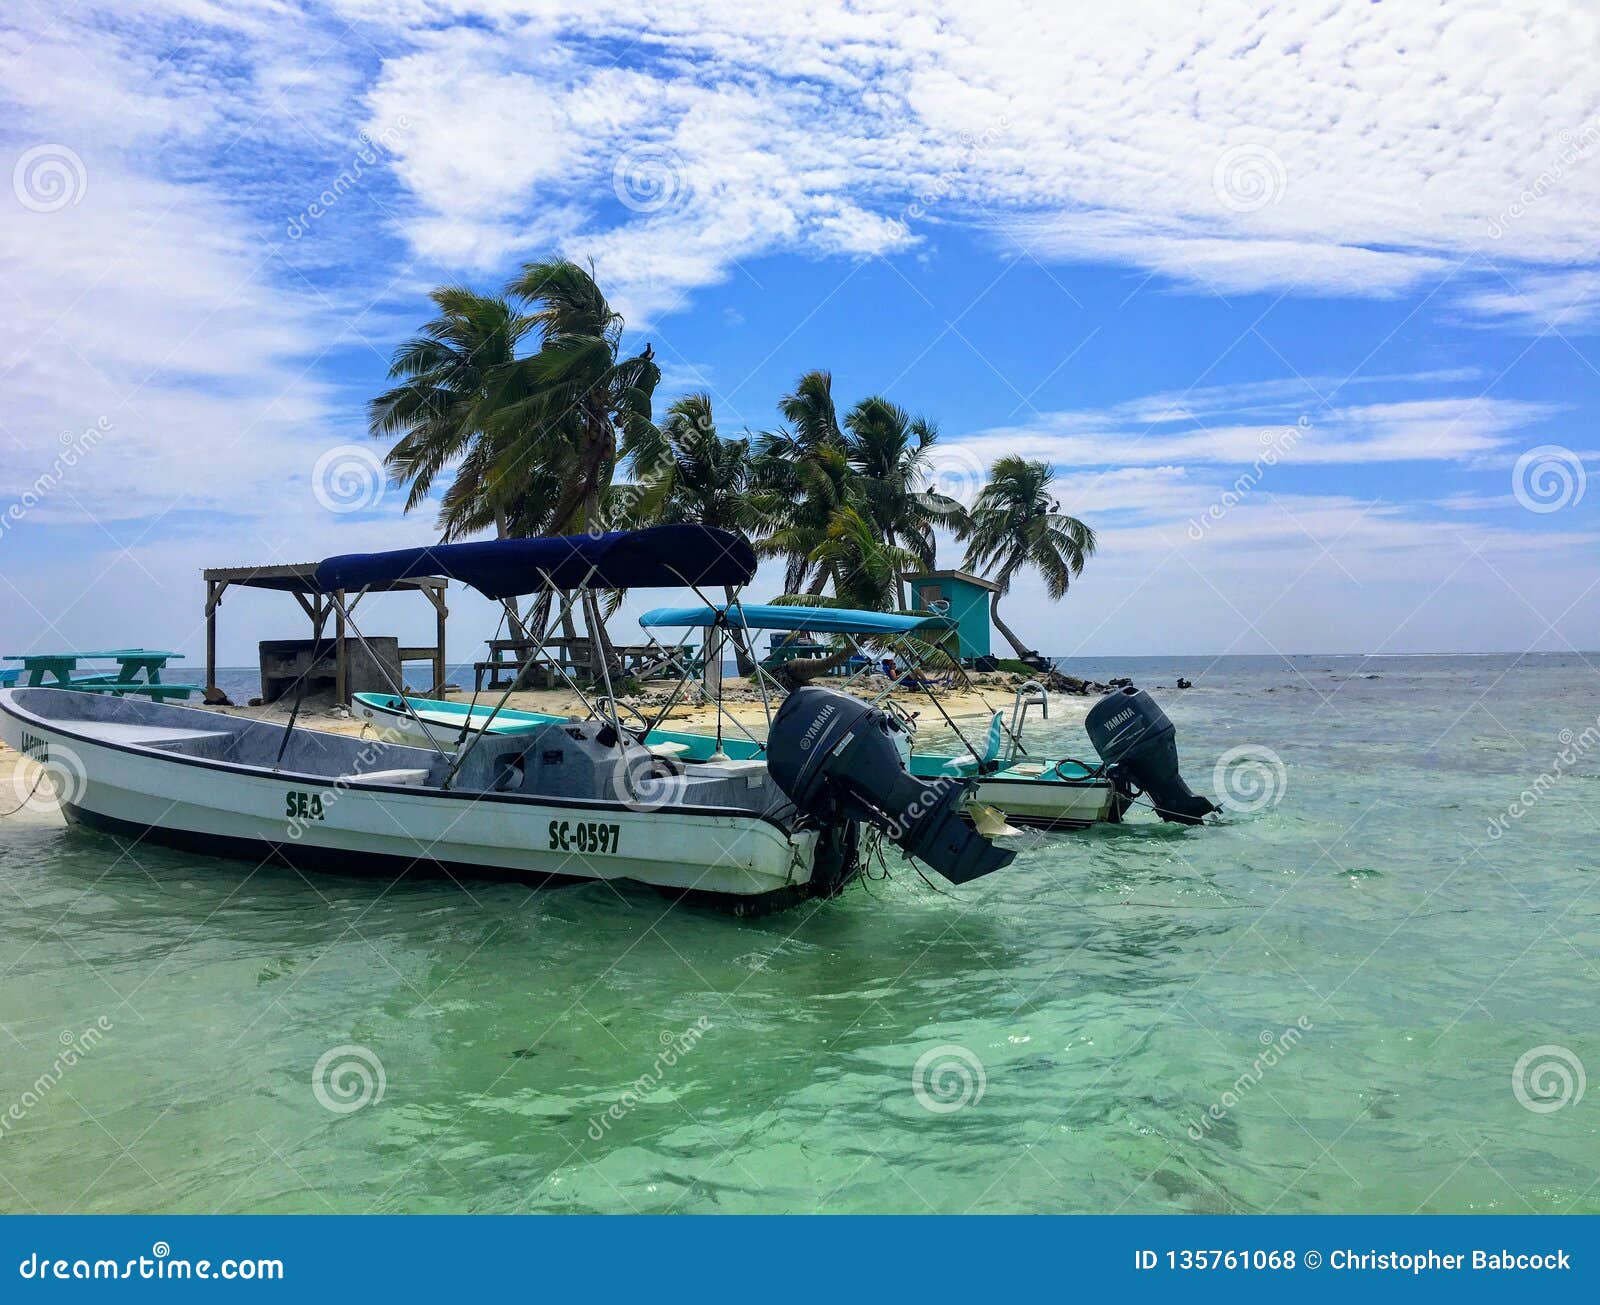 Oiseau riant Caye, Belize - 31 mai 2018 : Deux bateaux ancrés dans le bas-fond de l'île tropicale de l'oiseau riant Caye, outre de la côte de Belize Une tache populaire pour des snorkelers et des plongeurs autonomes